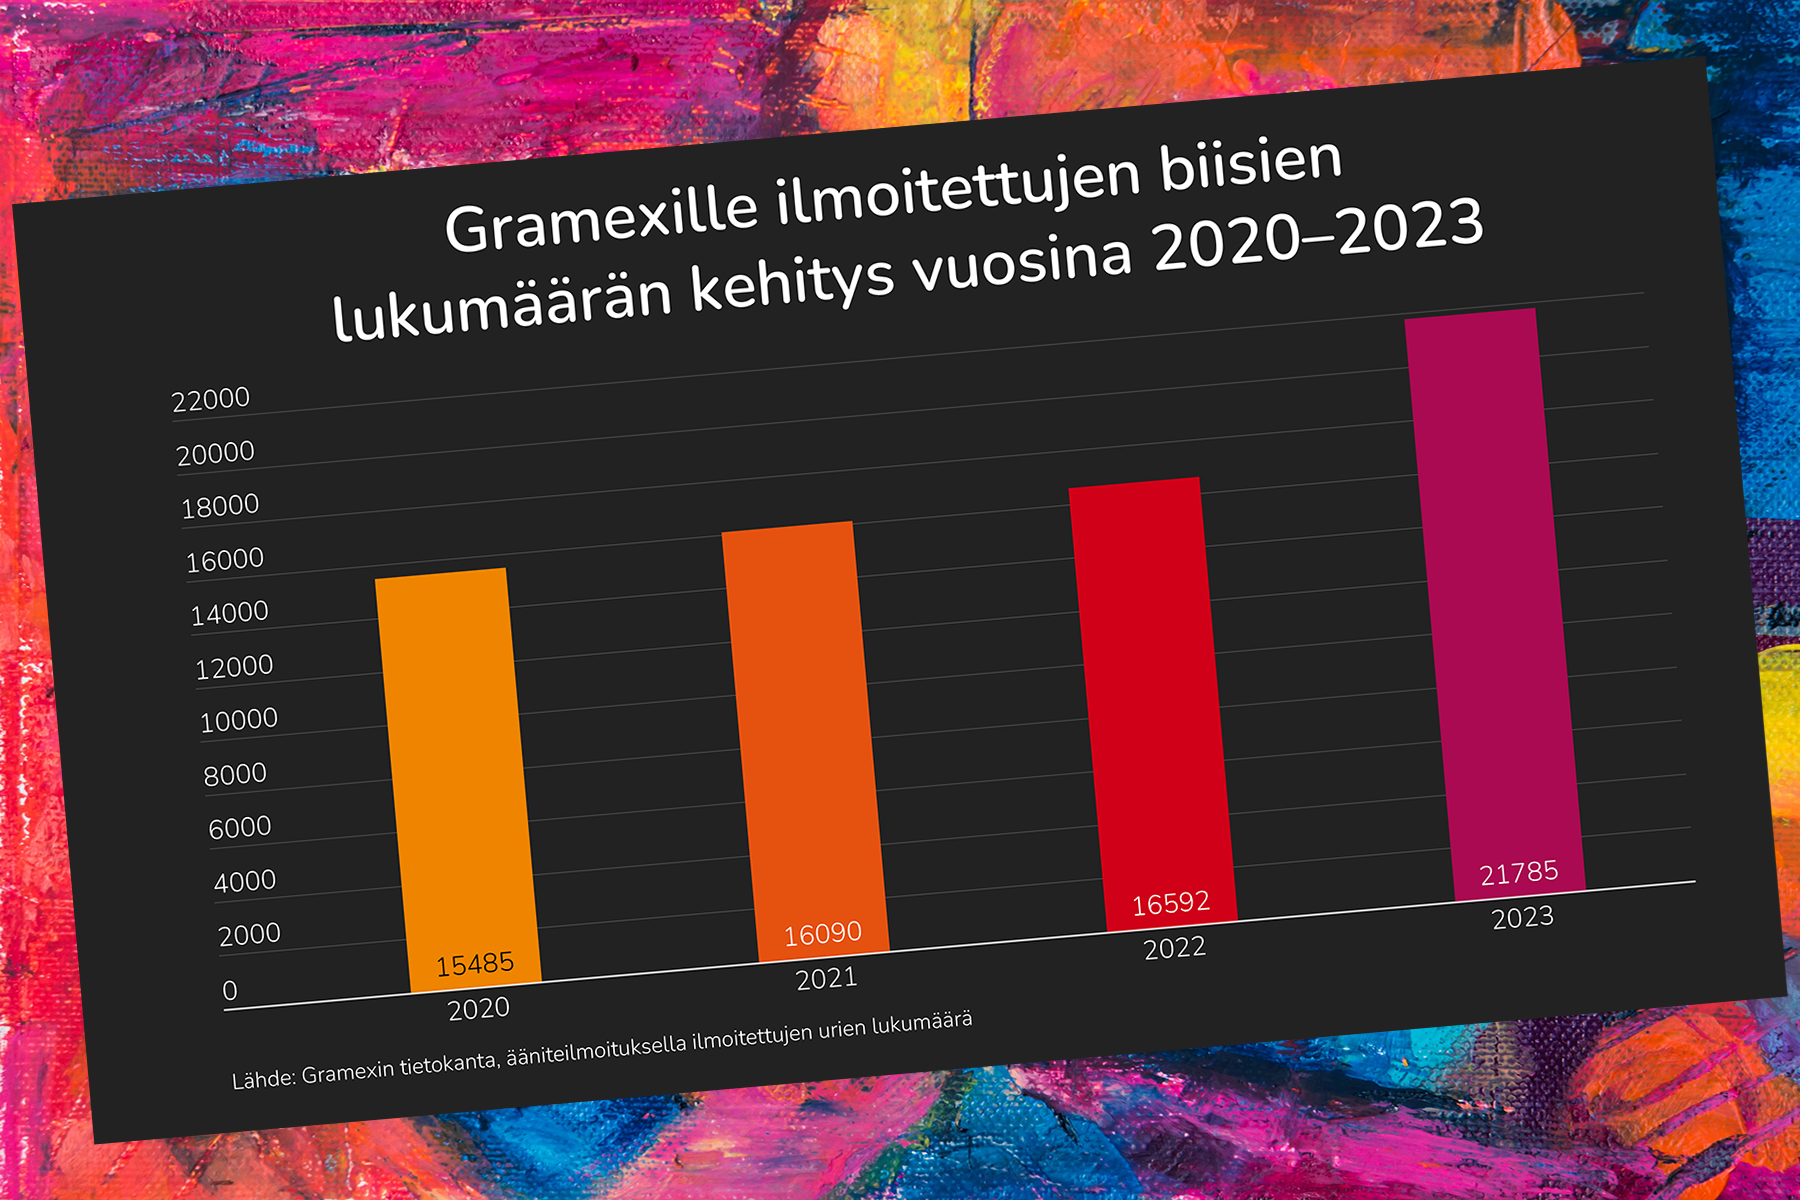 Kuvassa pylväsdiagrammi, jossa kuvataan Gramexille ilmoitettujen biisien eli raitojen määrän kehitys vuosina 2020 - 2023. Määrä on kasvanut vuoden 2020 15485 kappaleesta vuoden 2023 21785 kappaleeseen.